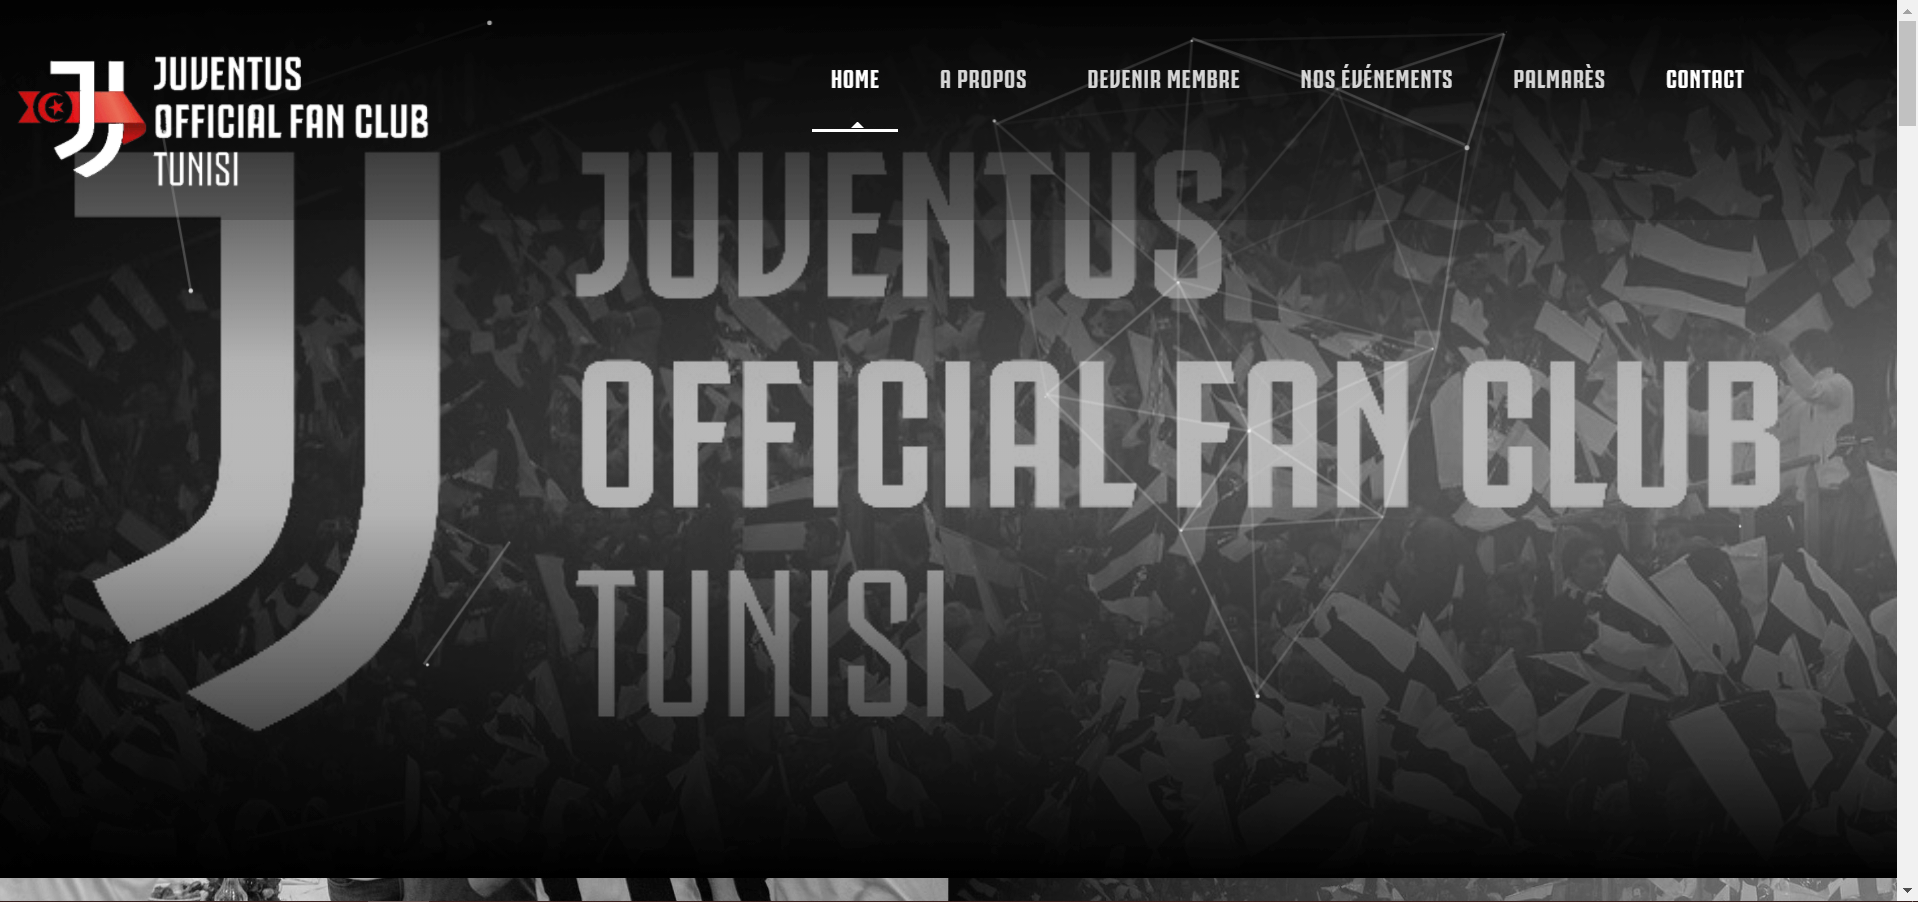 Juventus fans club